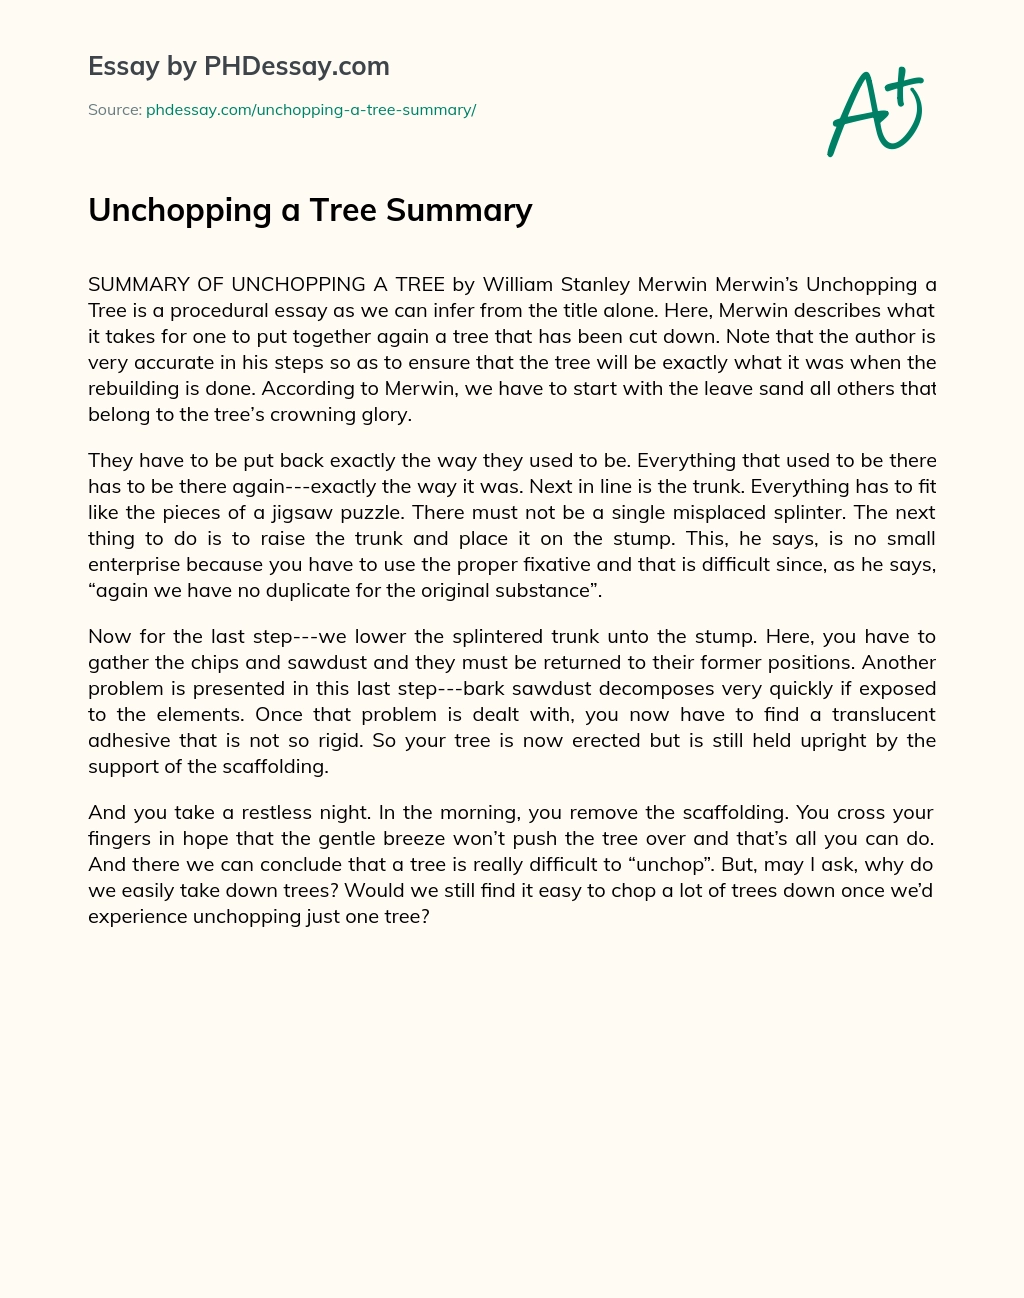 Unchopping a Tree Summary essay